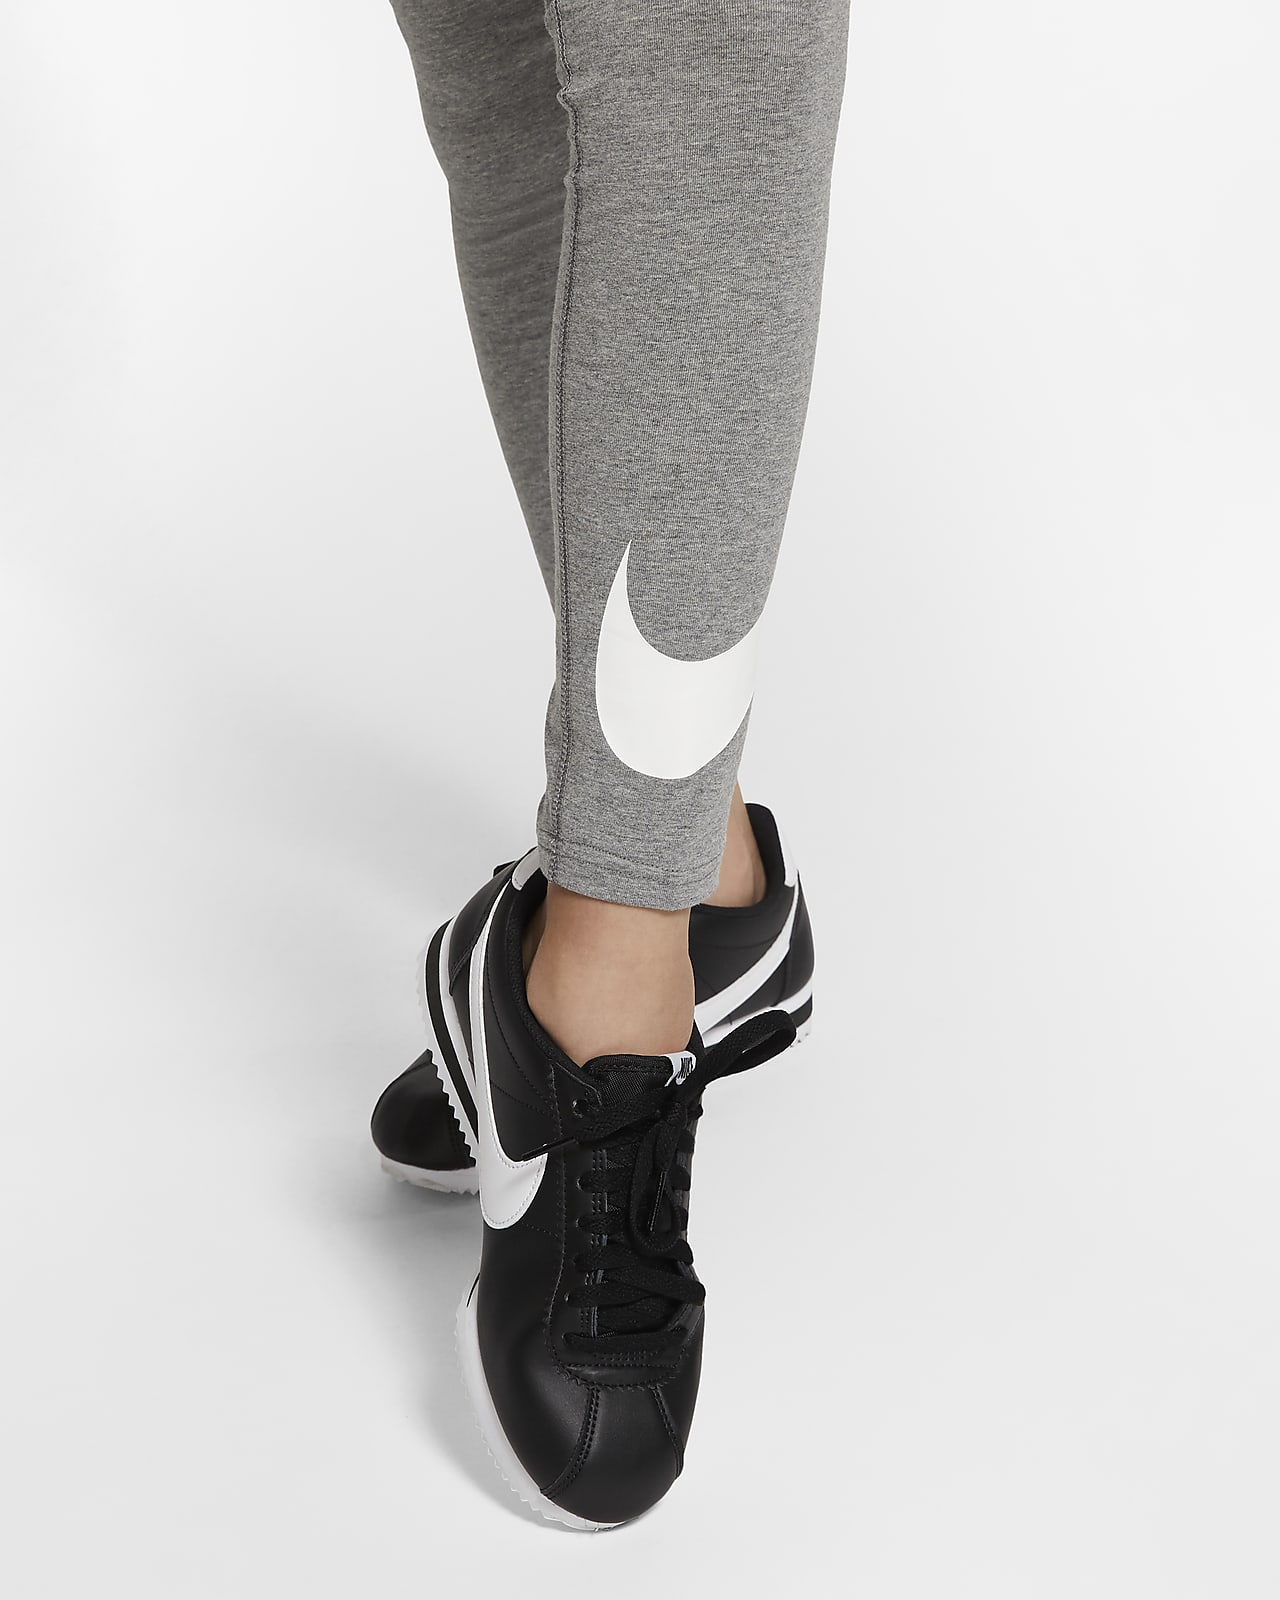 Nike Sportswear Favourites Older Kids' (Girls') Leggings. Nike SI